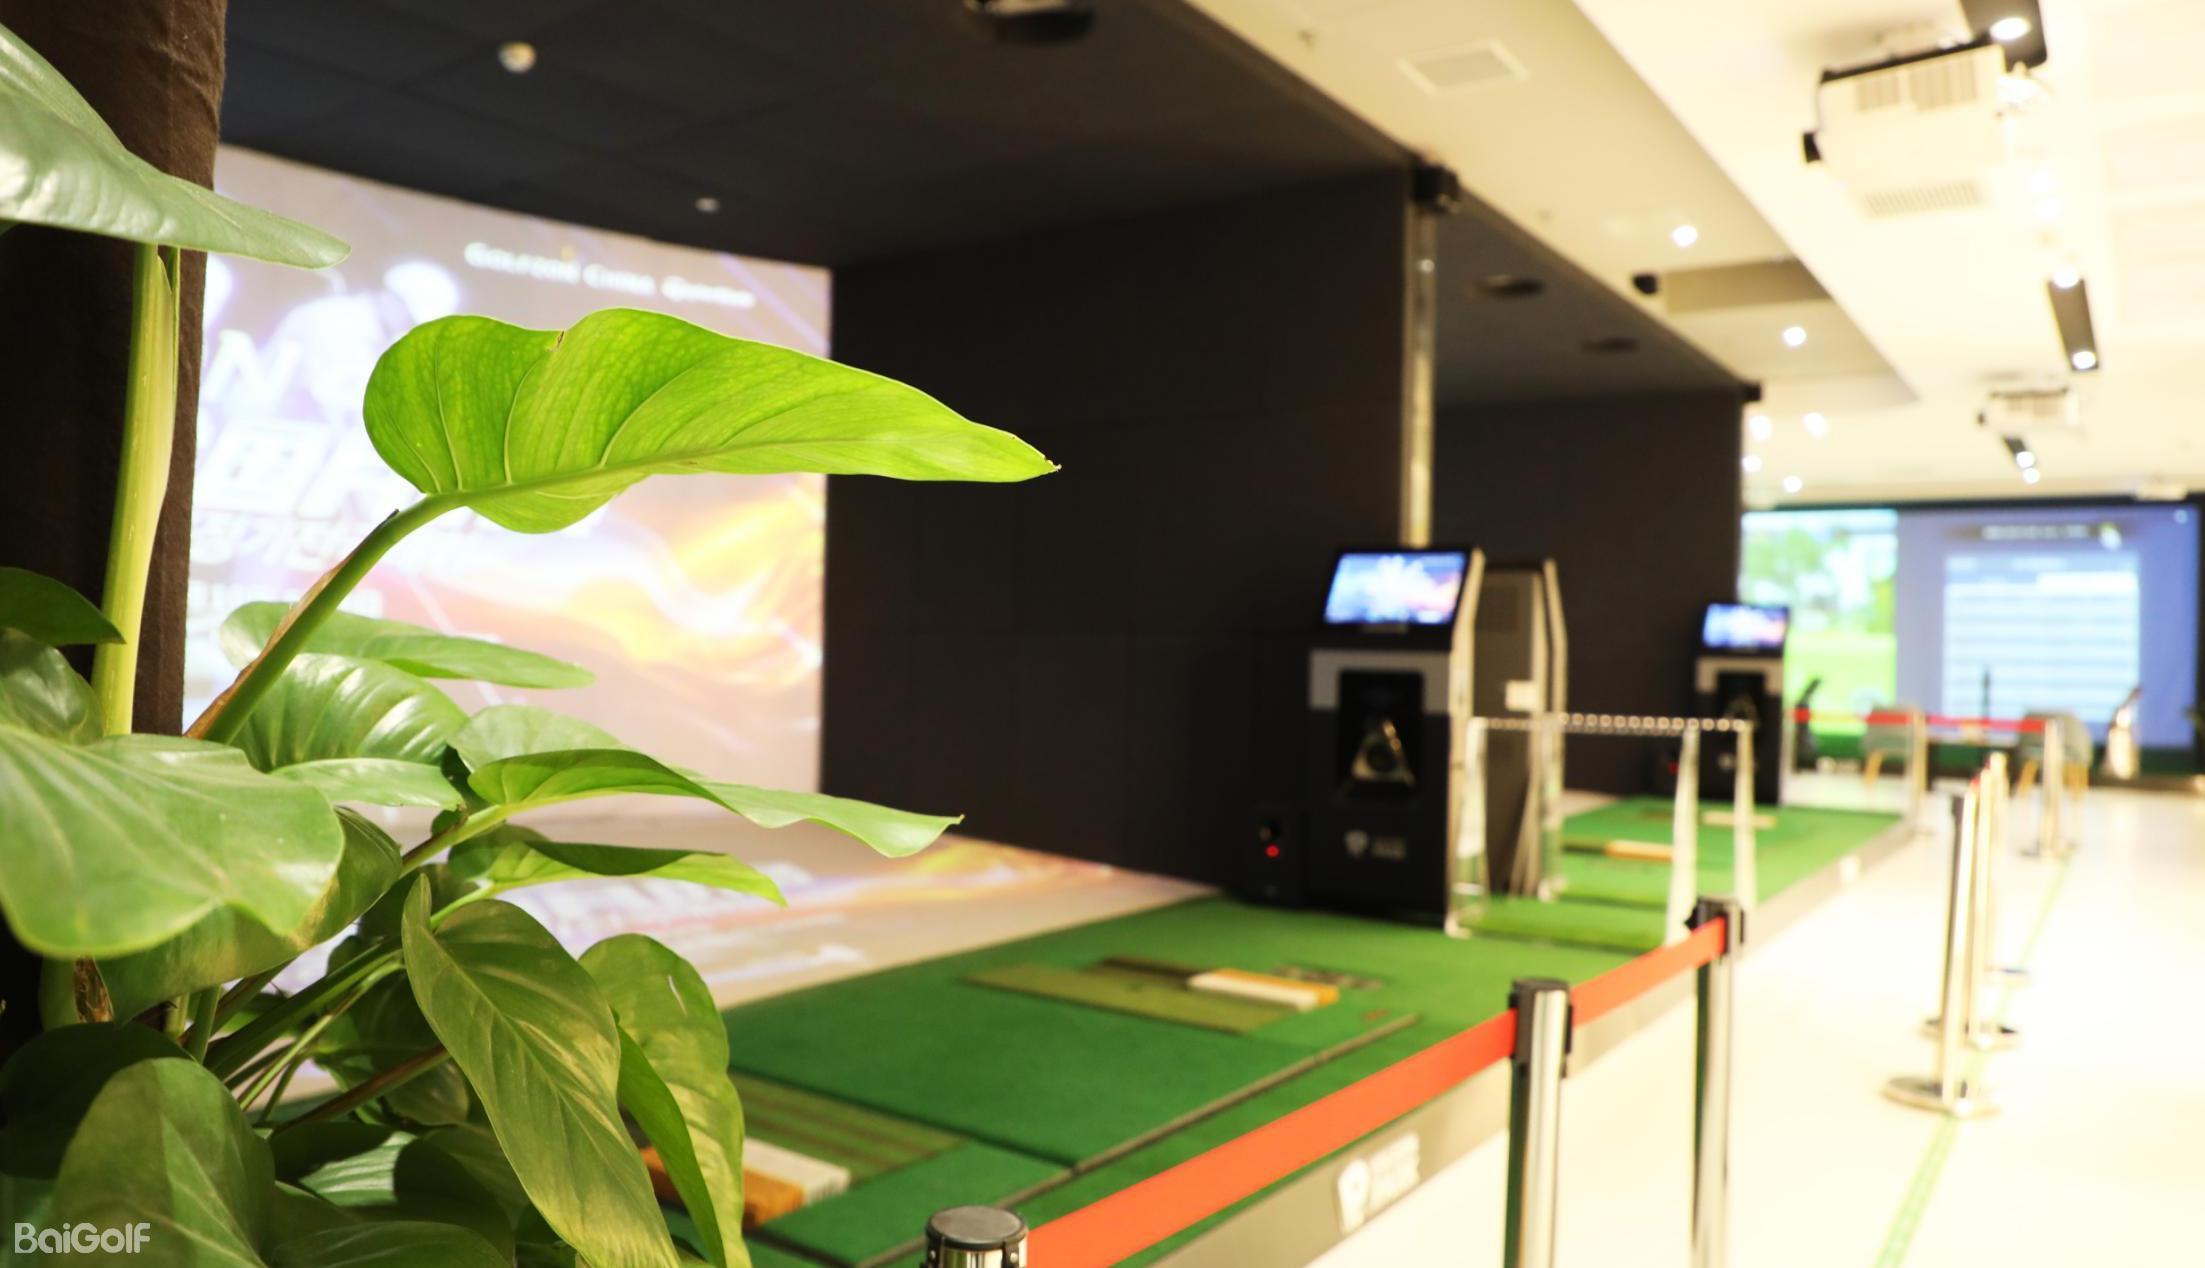 30㎡ 打造奢美高尔夫模拟器空间 尊享私家高尔夫-深圳市如歌科技有限公司